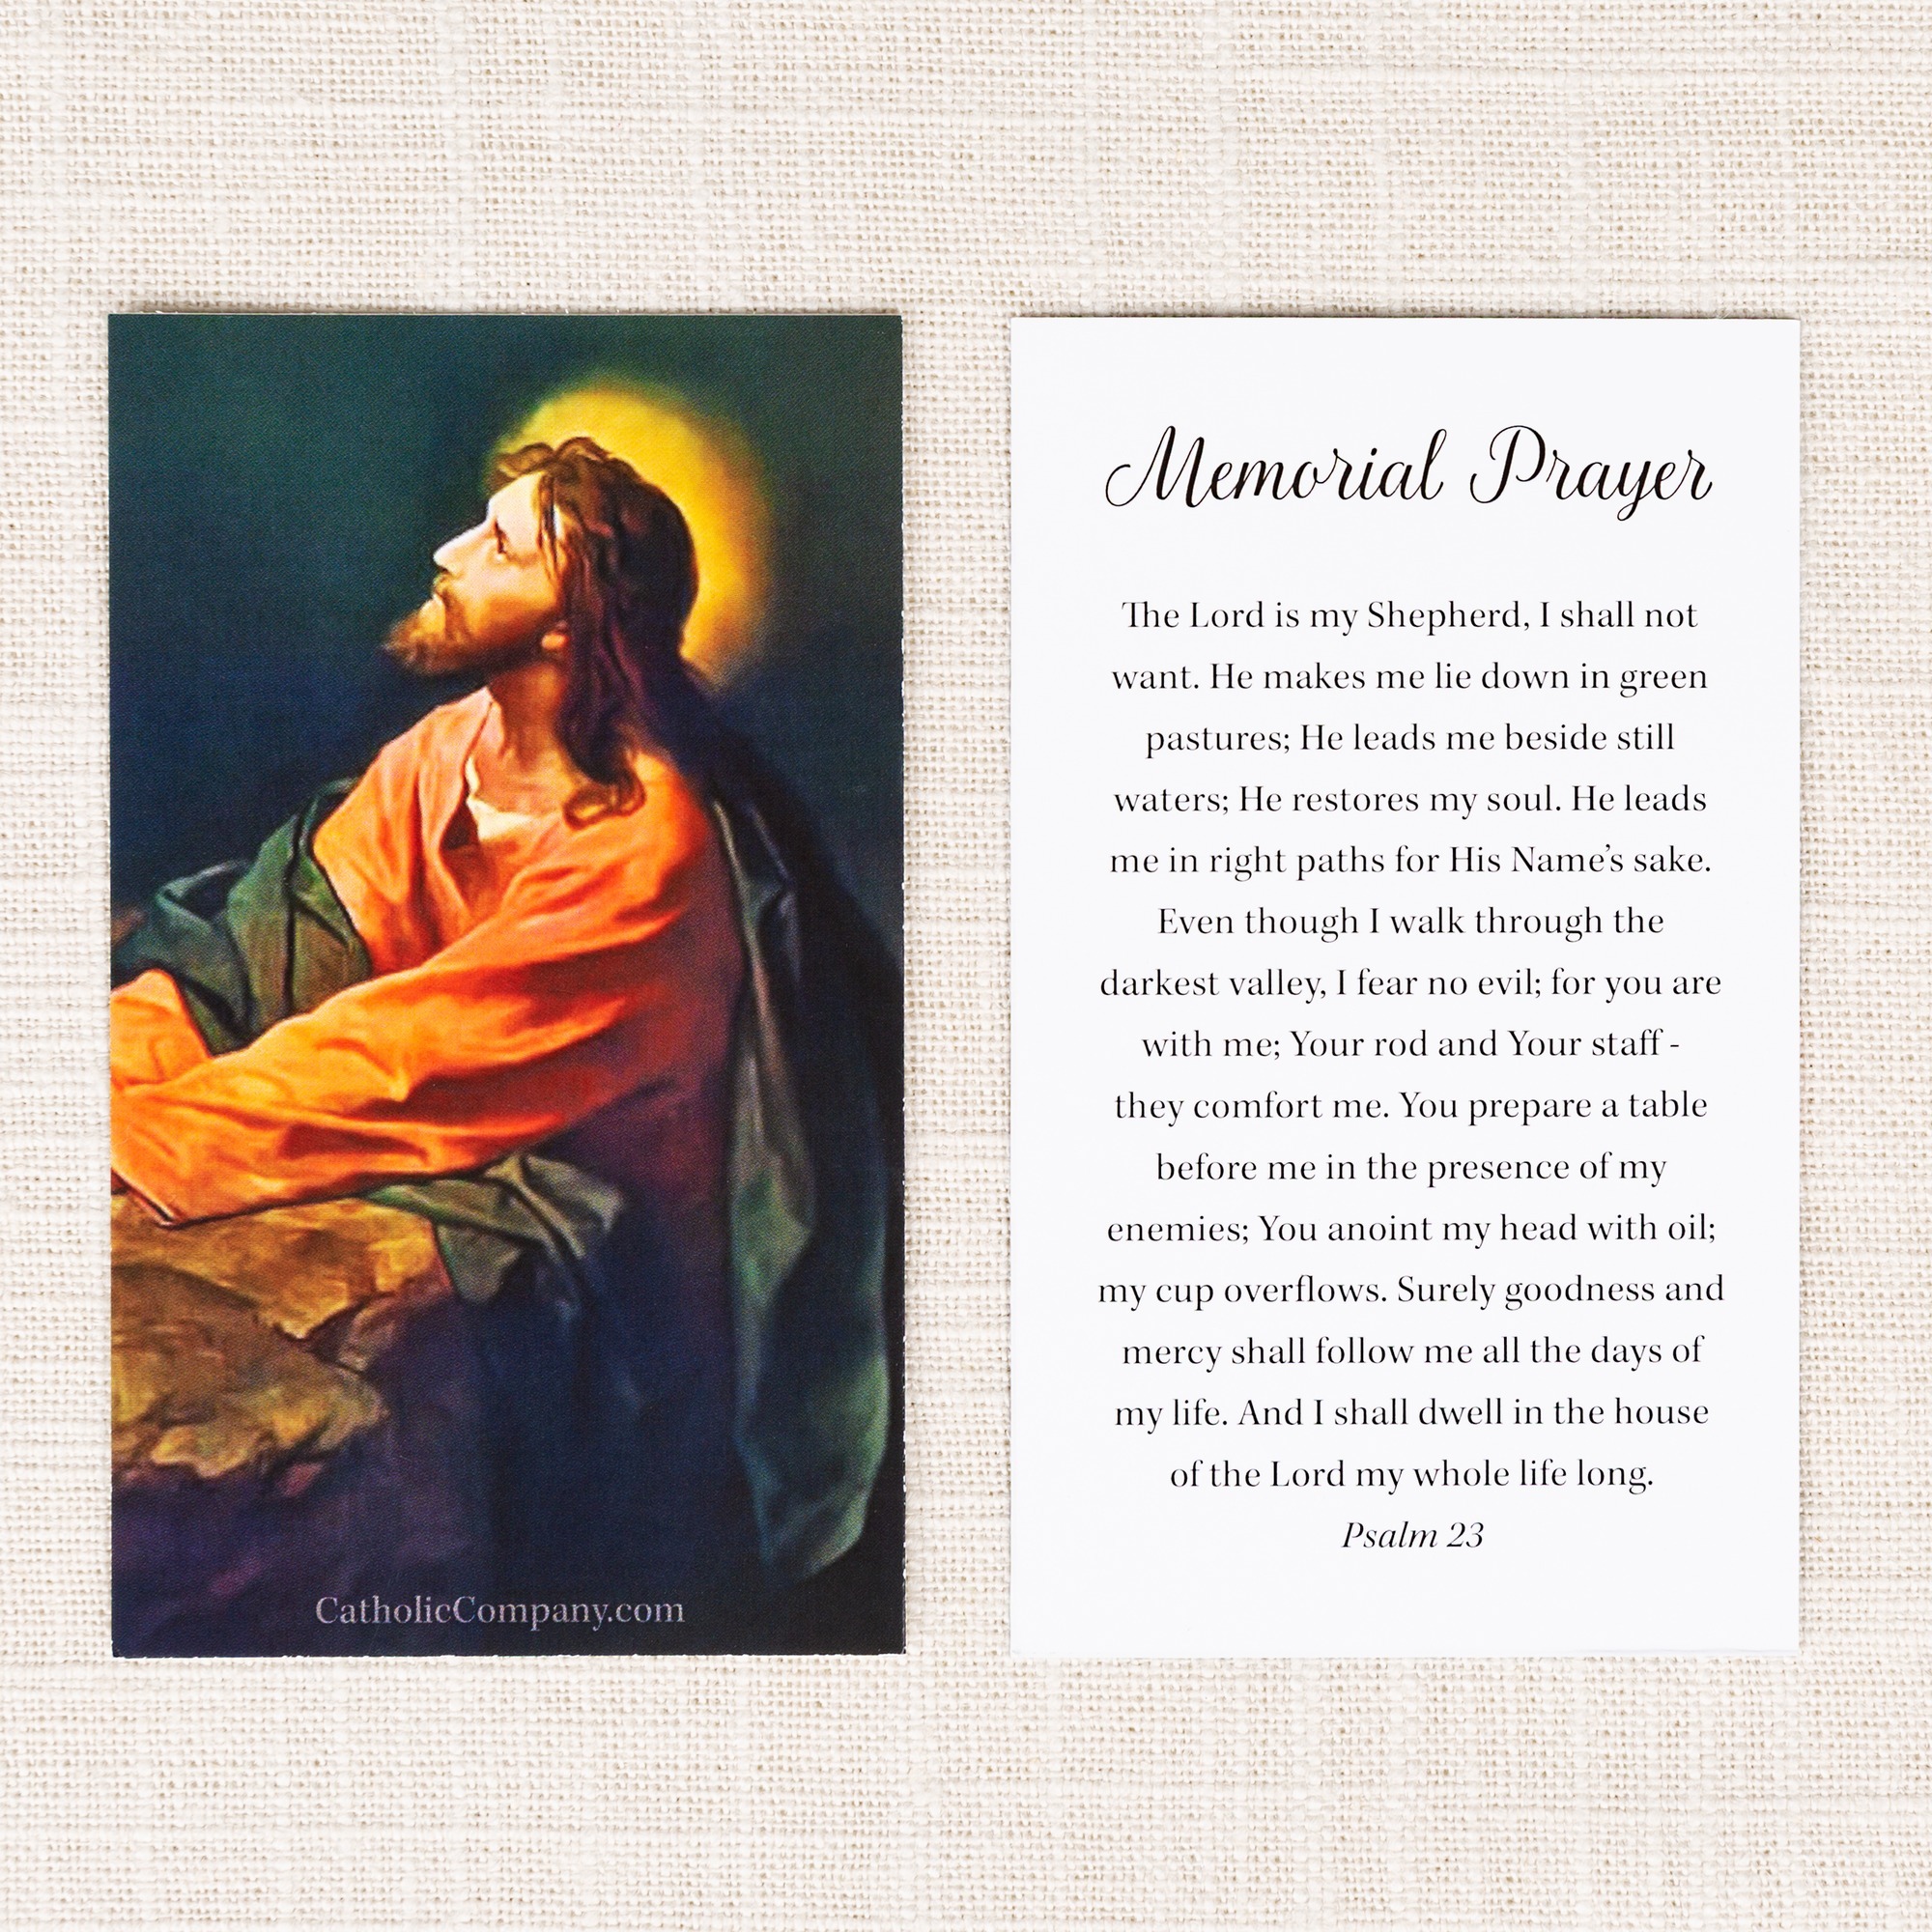 Memorial Prayer Card Template Free